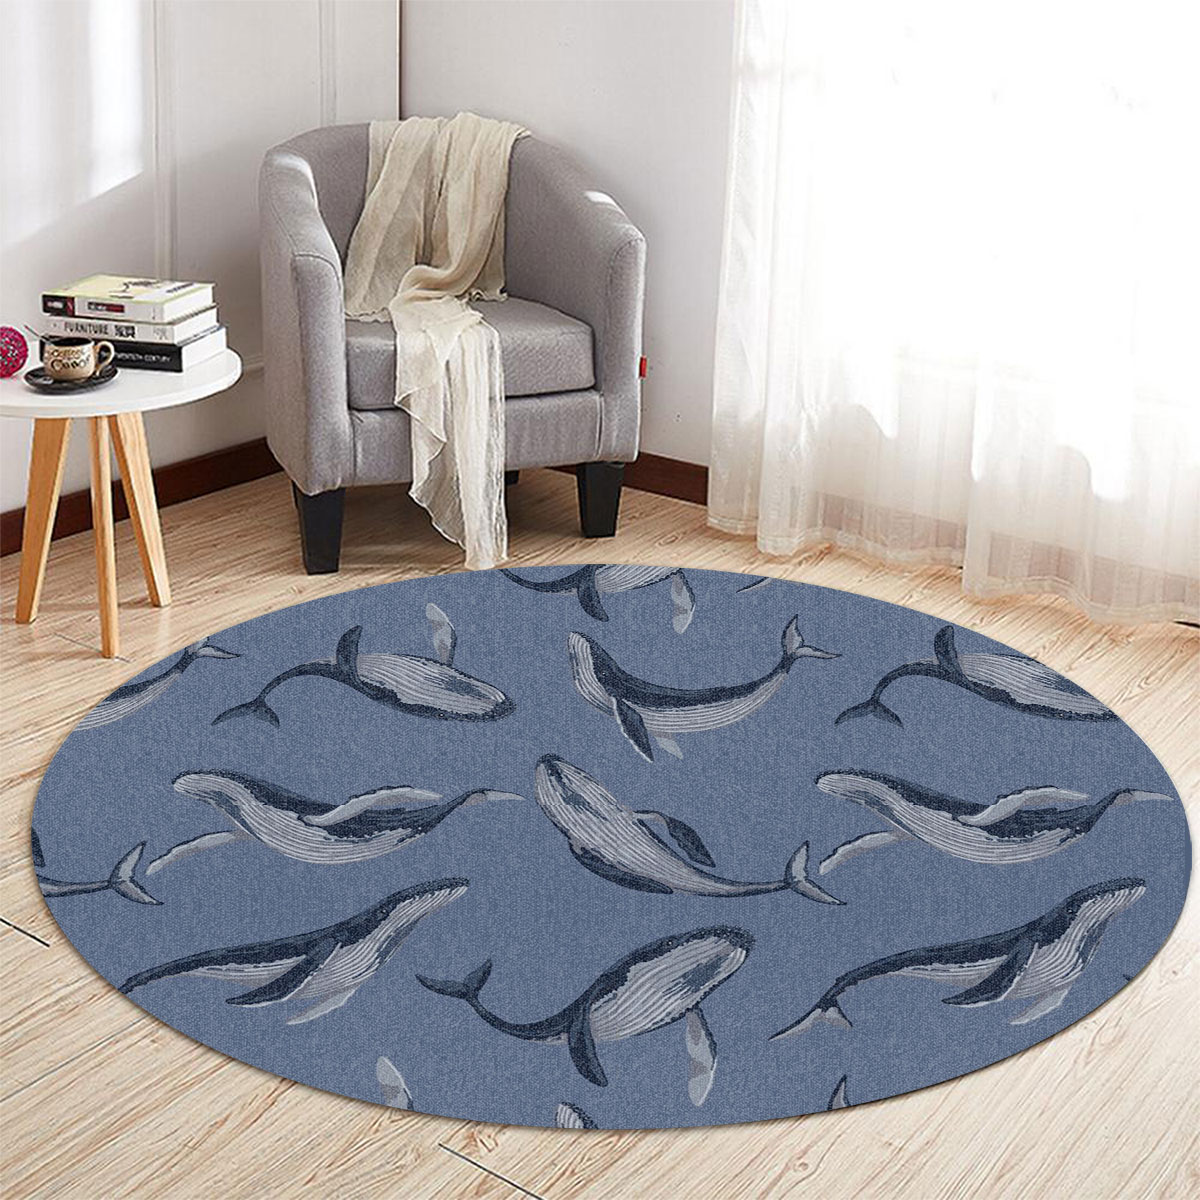 Deep Ocean Blue Whale Round Carpet